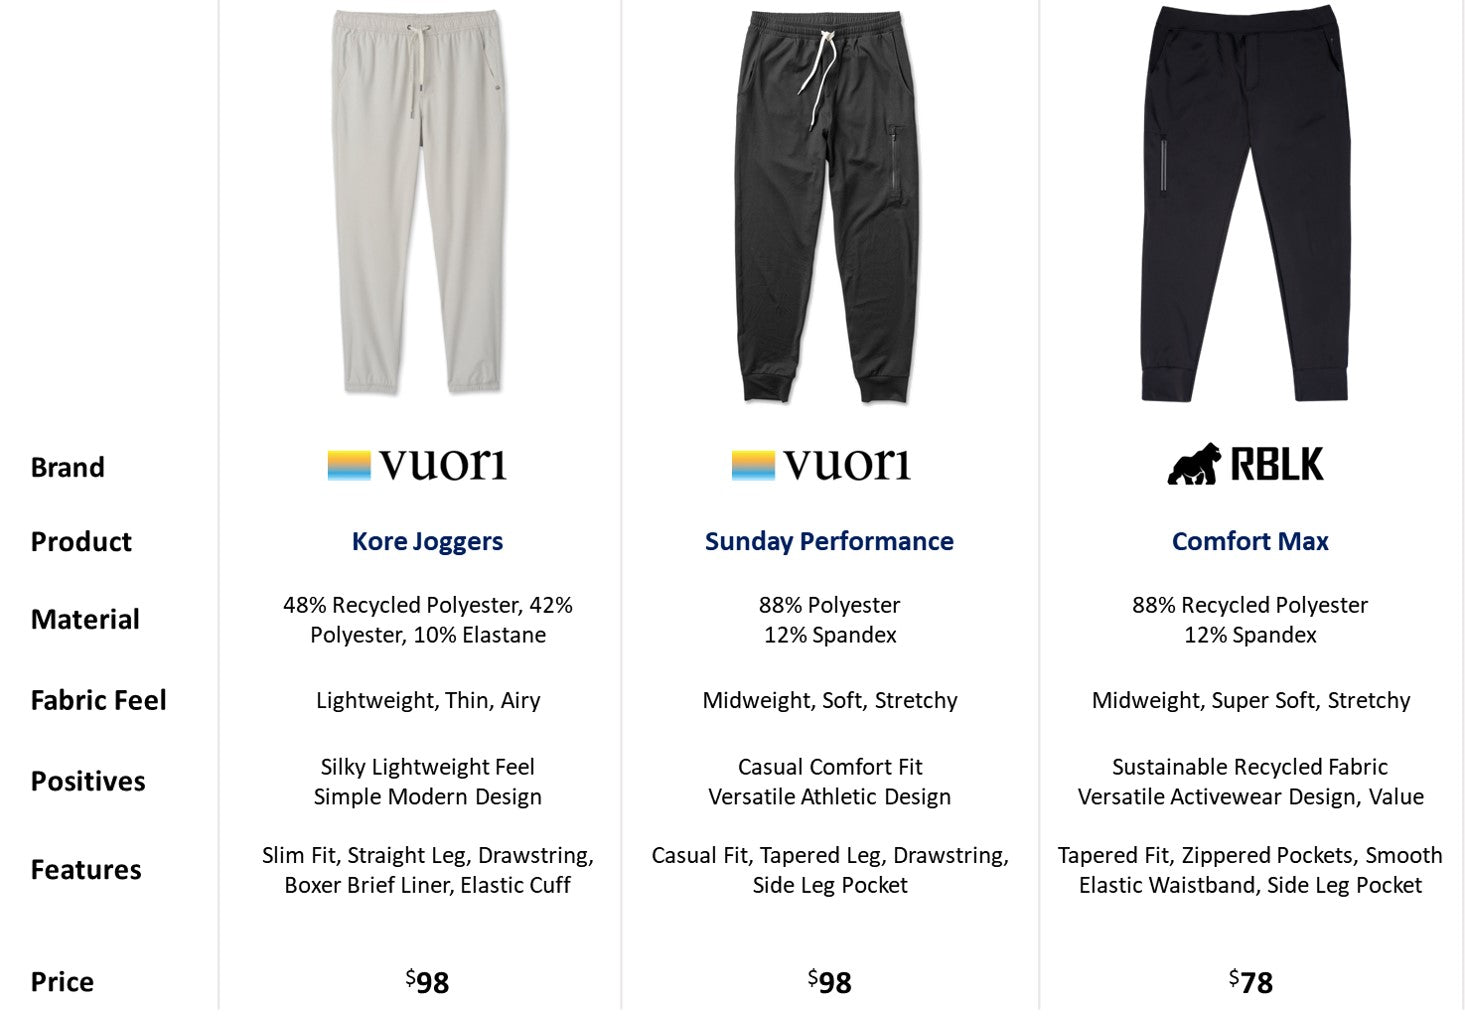 Vuori Haul: Reviewing Vuori's Bestselling Ripstop Pants and Transit Jo